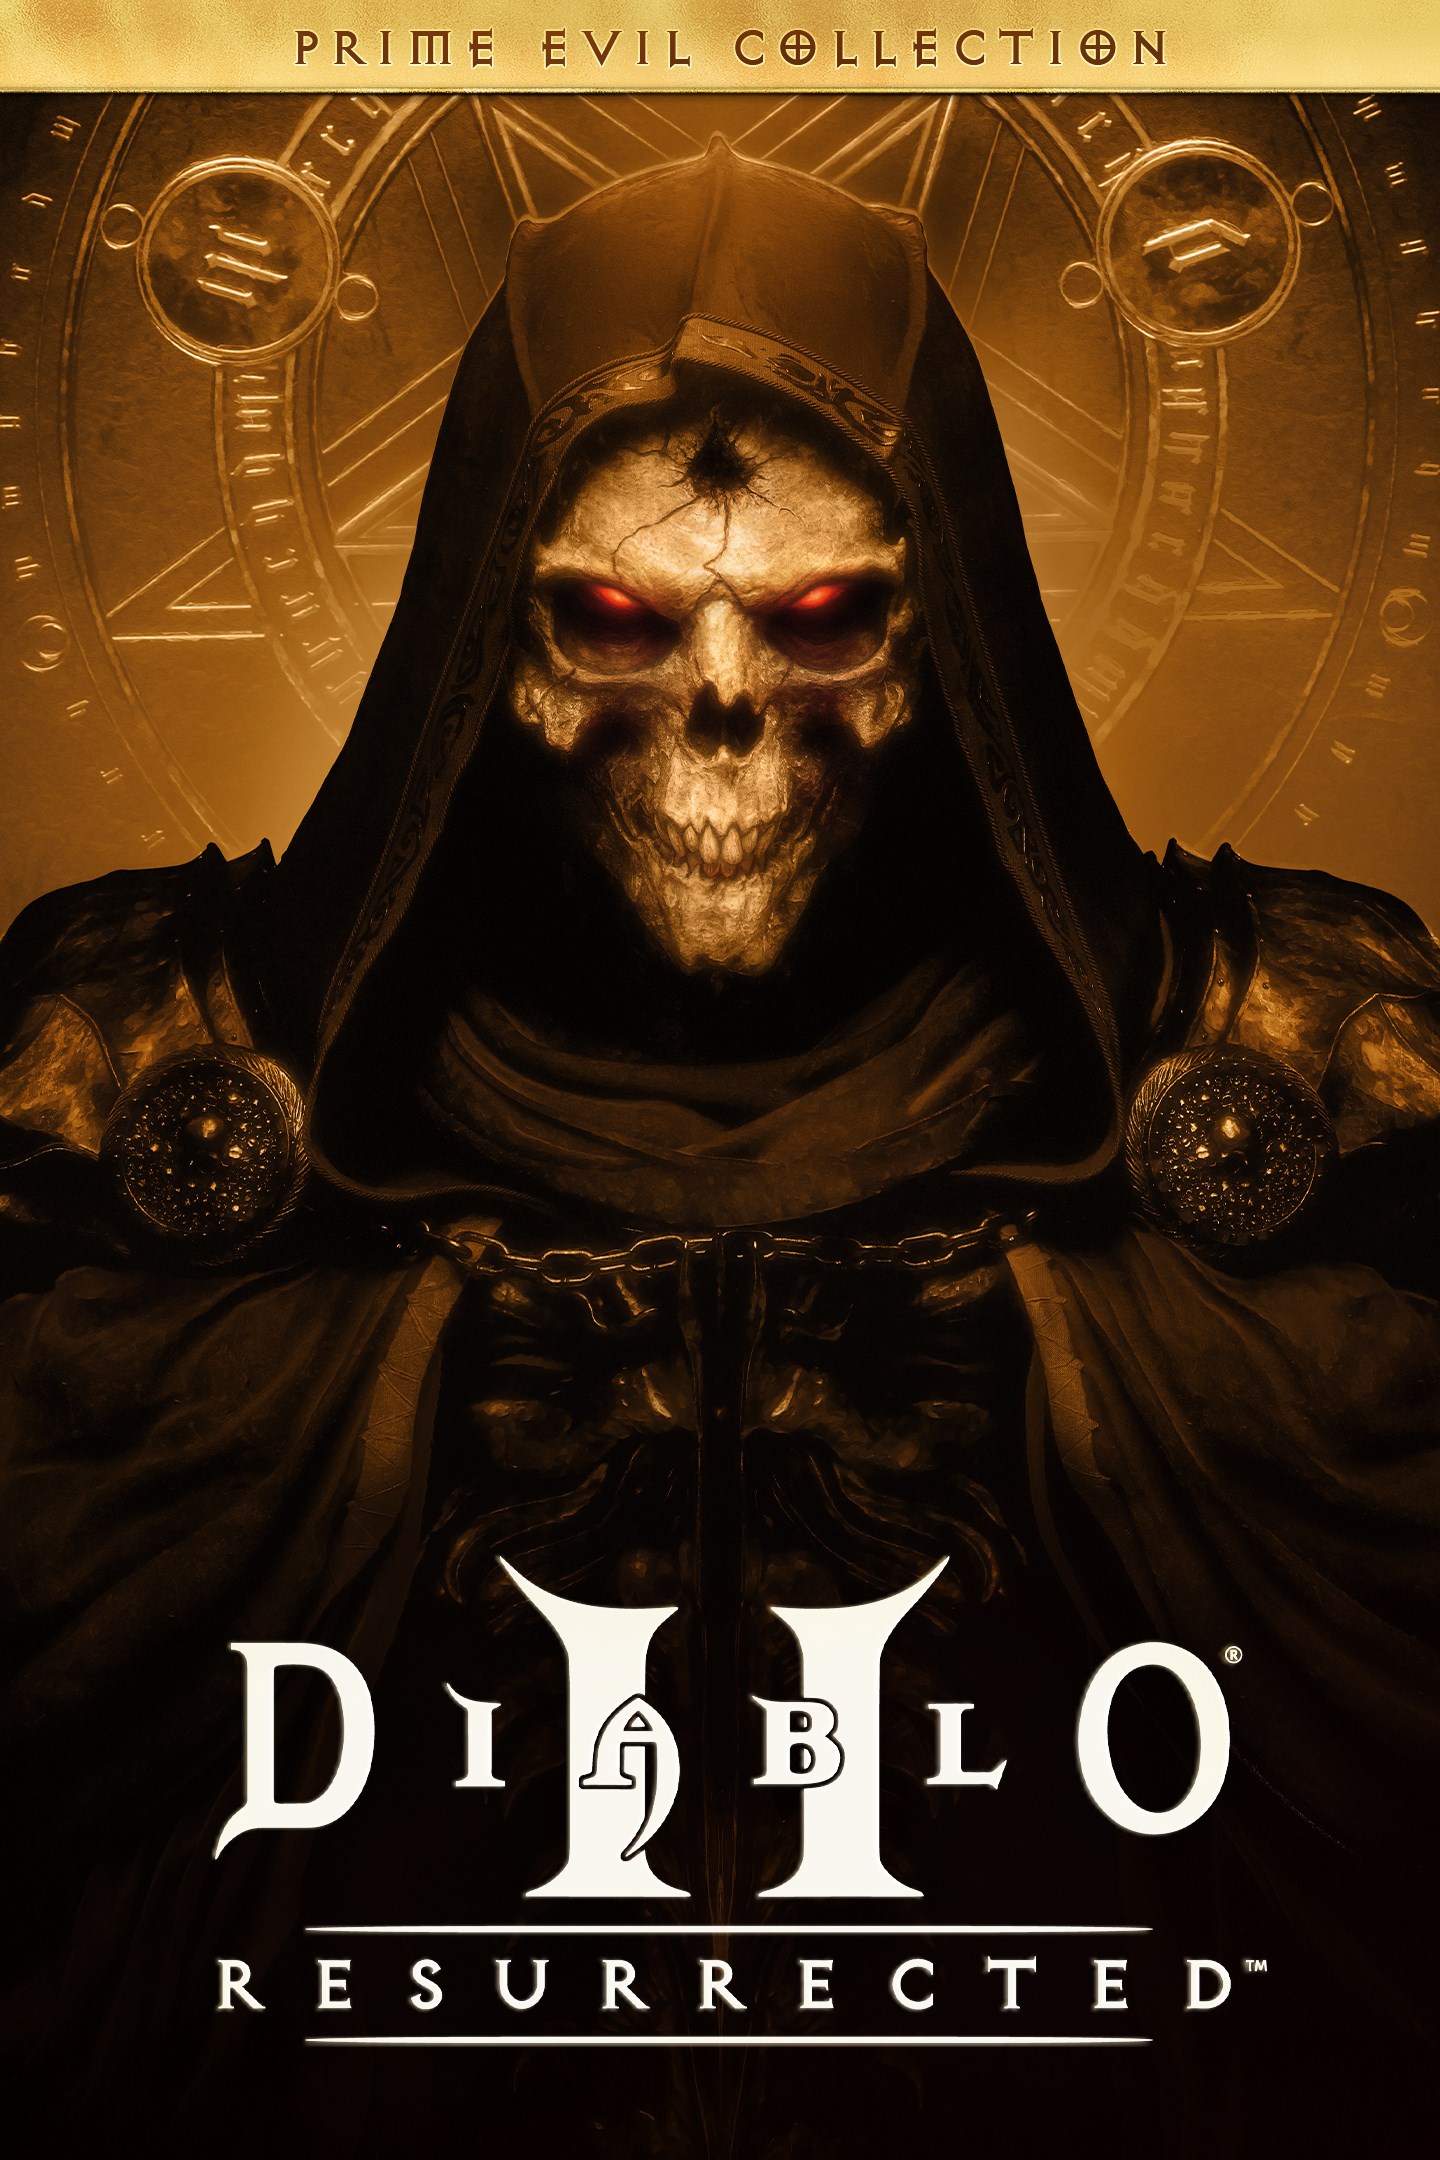 [PS4] Diablo II: Resurrected